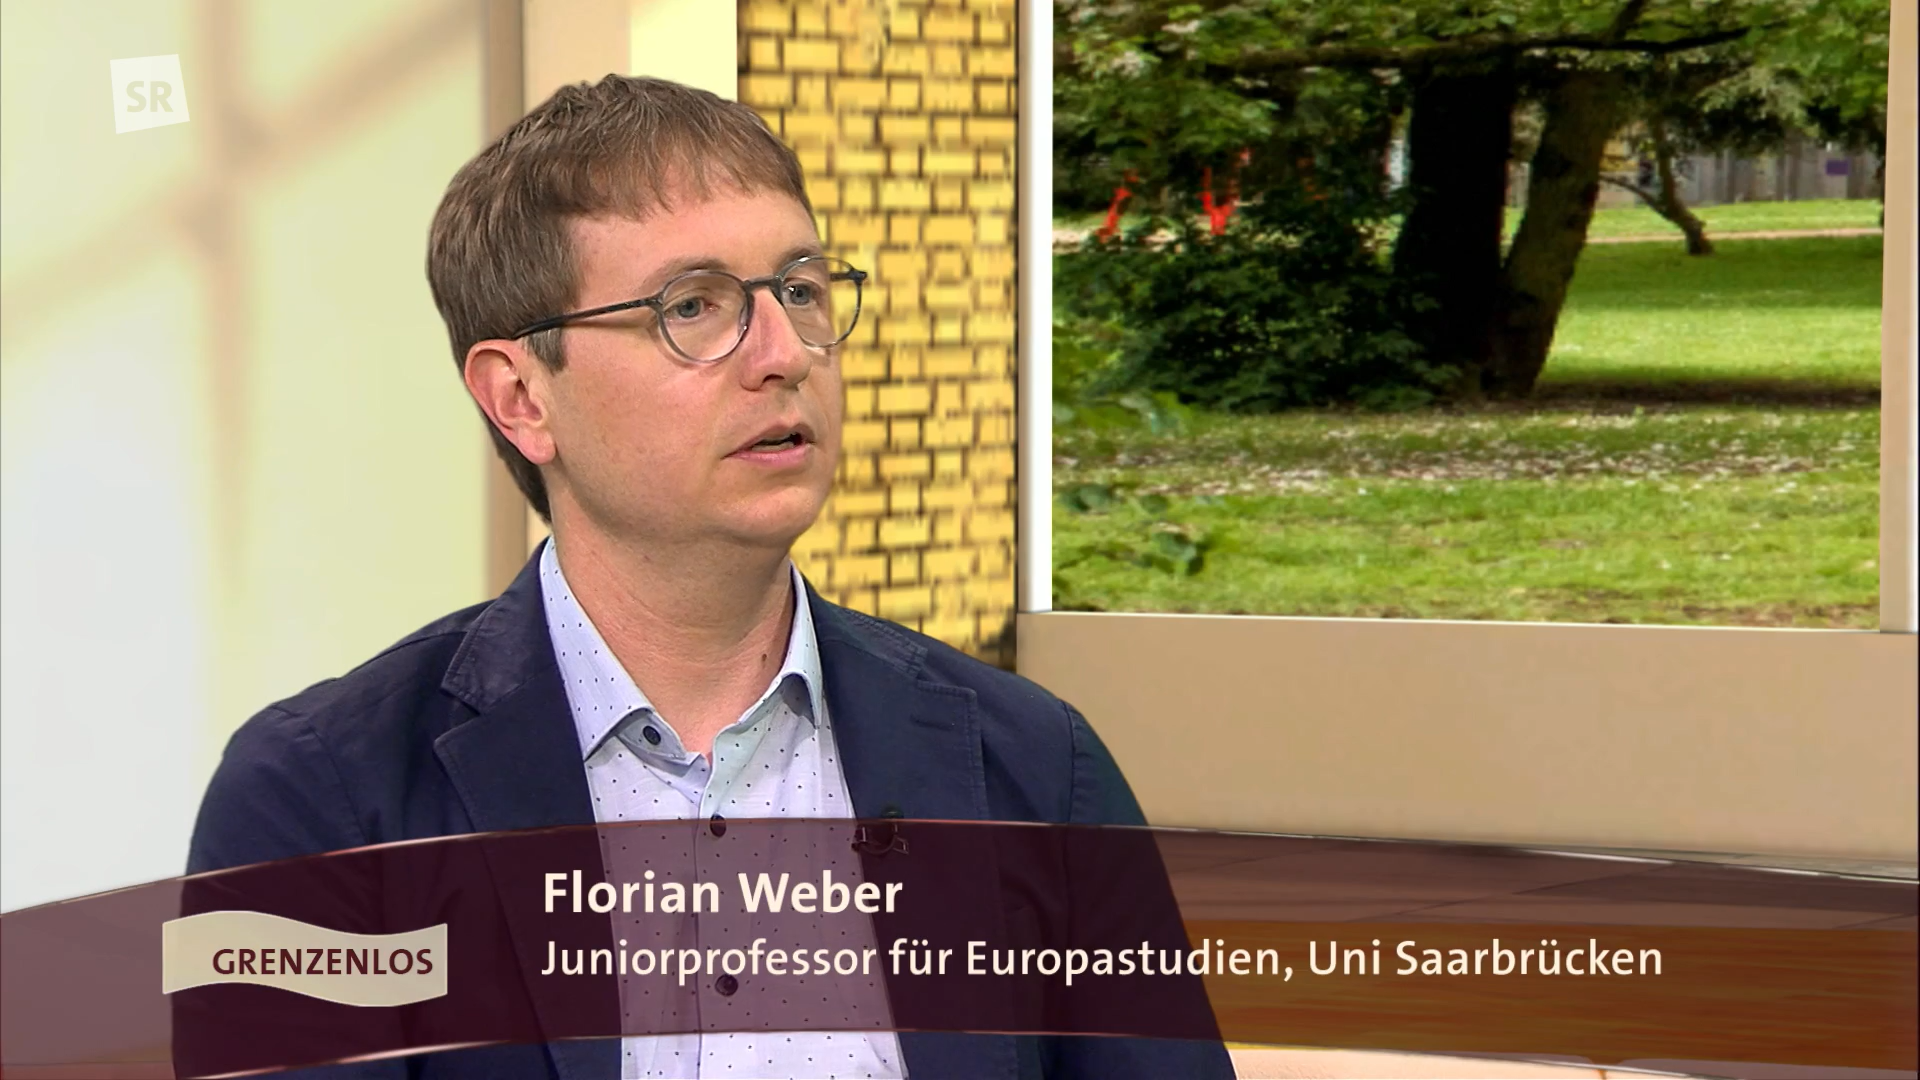 CEUS-Clusterprofessor Jun.-Prof. Dr. Florian Weber in der Sendung "Wir im Saarland - Grenzenlos" im SR-Fernsehen über die Europawahl